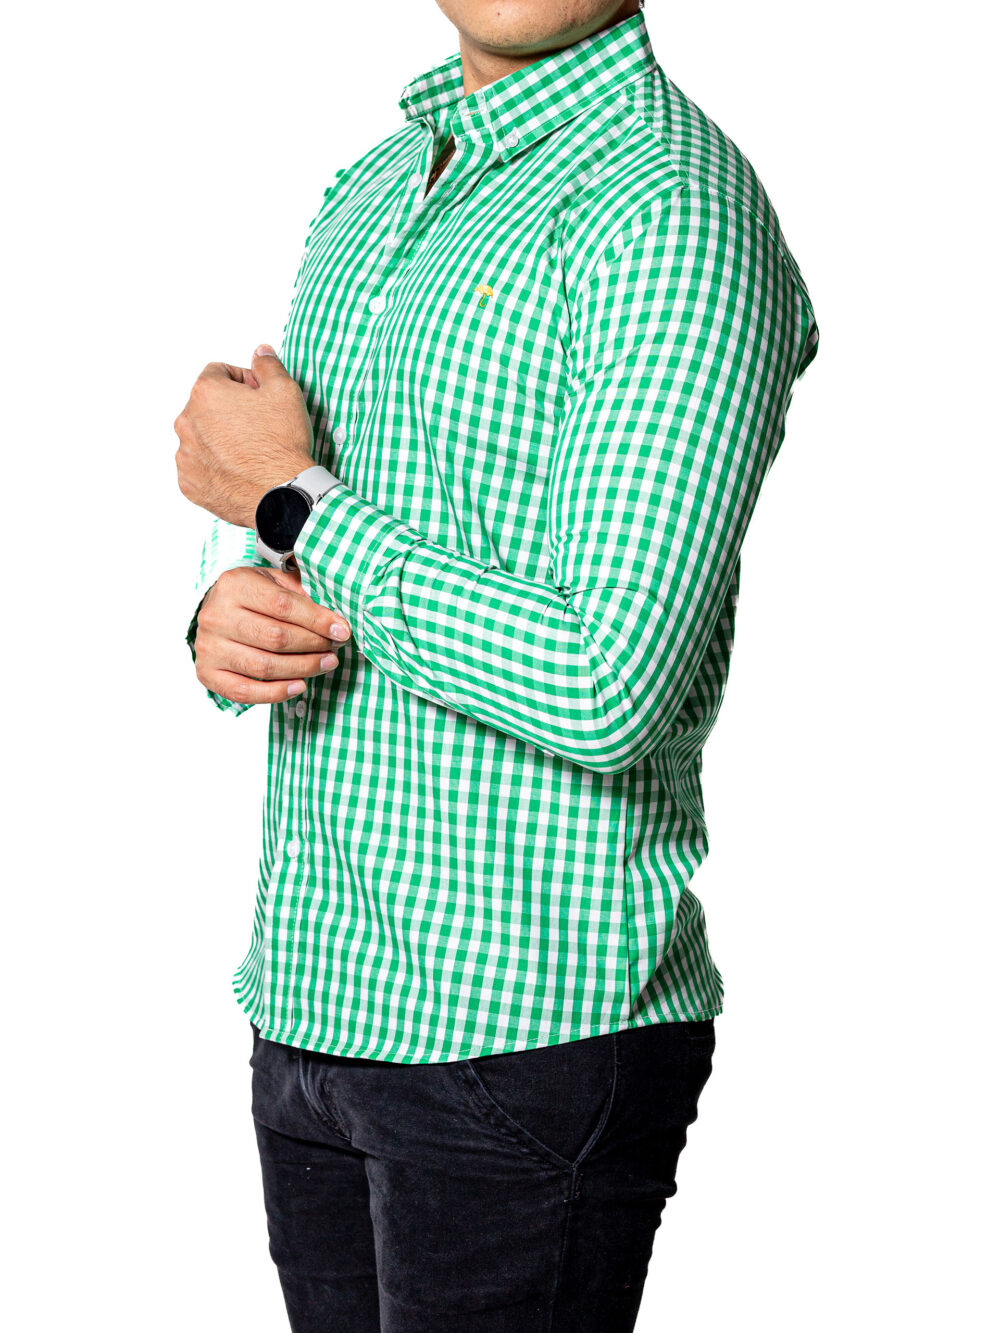 Camisa Hombre Casual Slim Fit Cuadros Verdes, Blancos 004 3